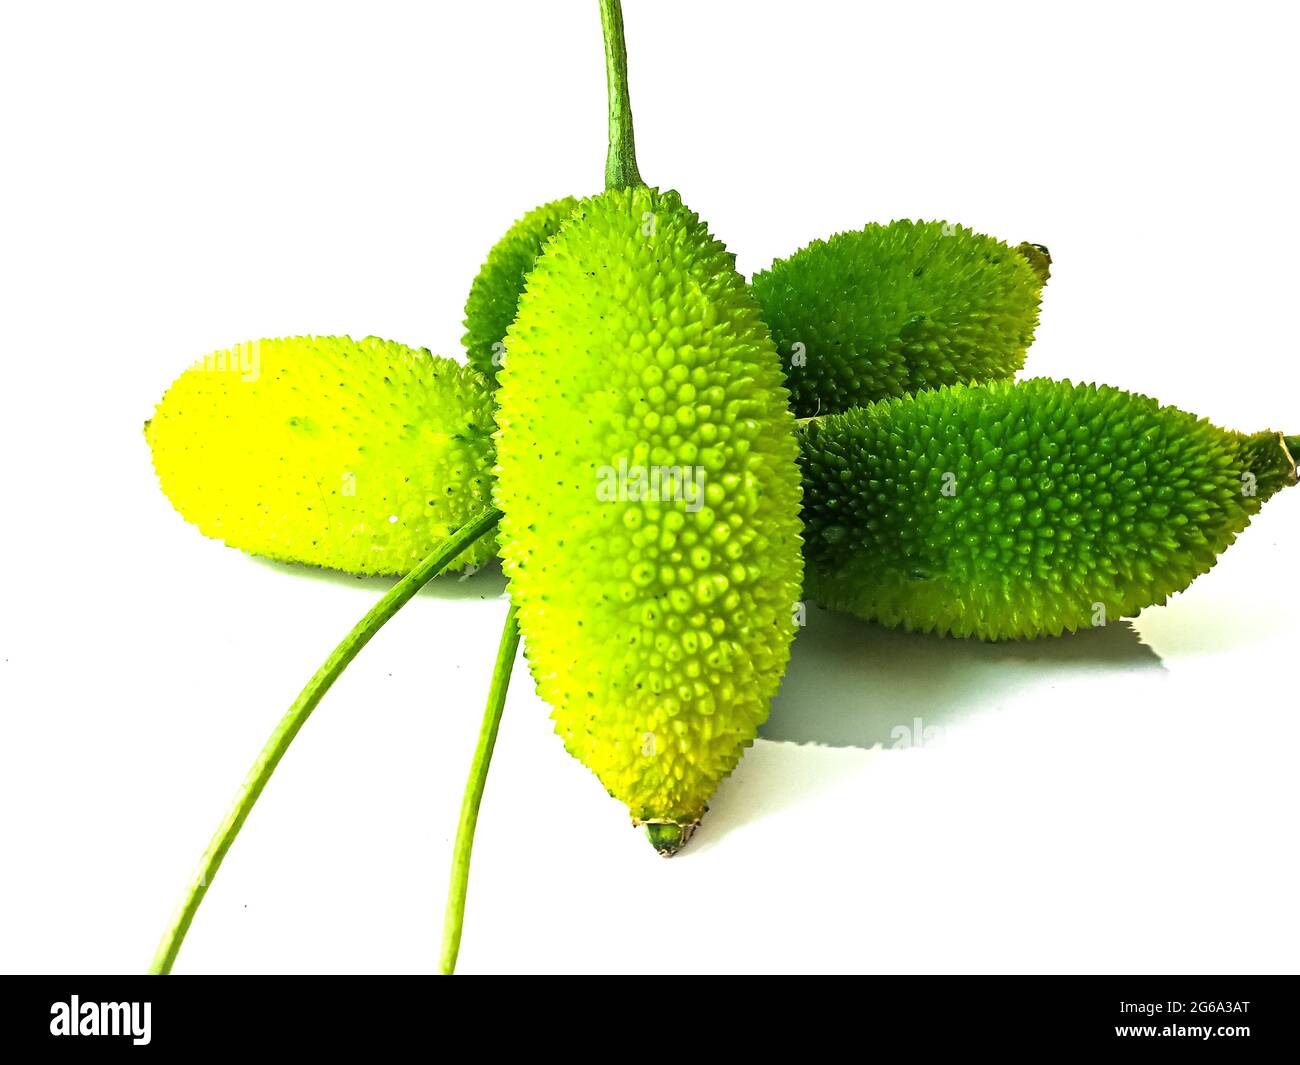 Zucca spinosa o zucca della spina conosciuta anche come bristly balsma pera, prickly carolaho isolato su sfondo bianco. Foto Stock